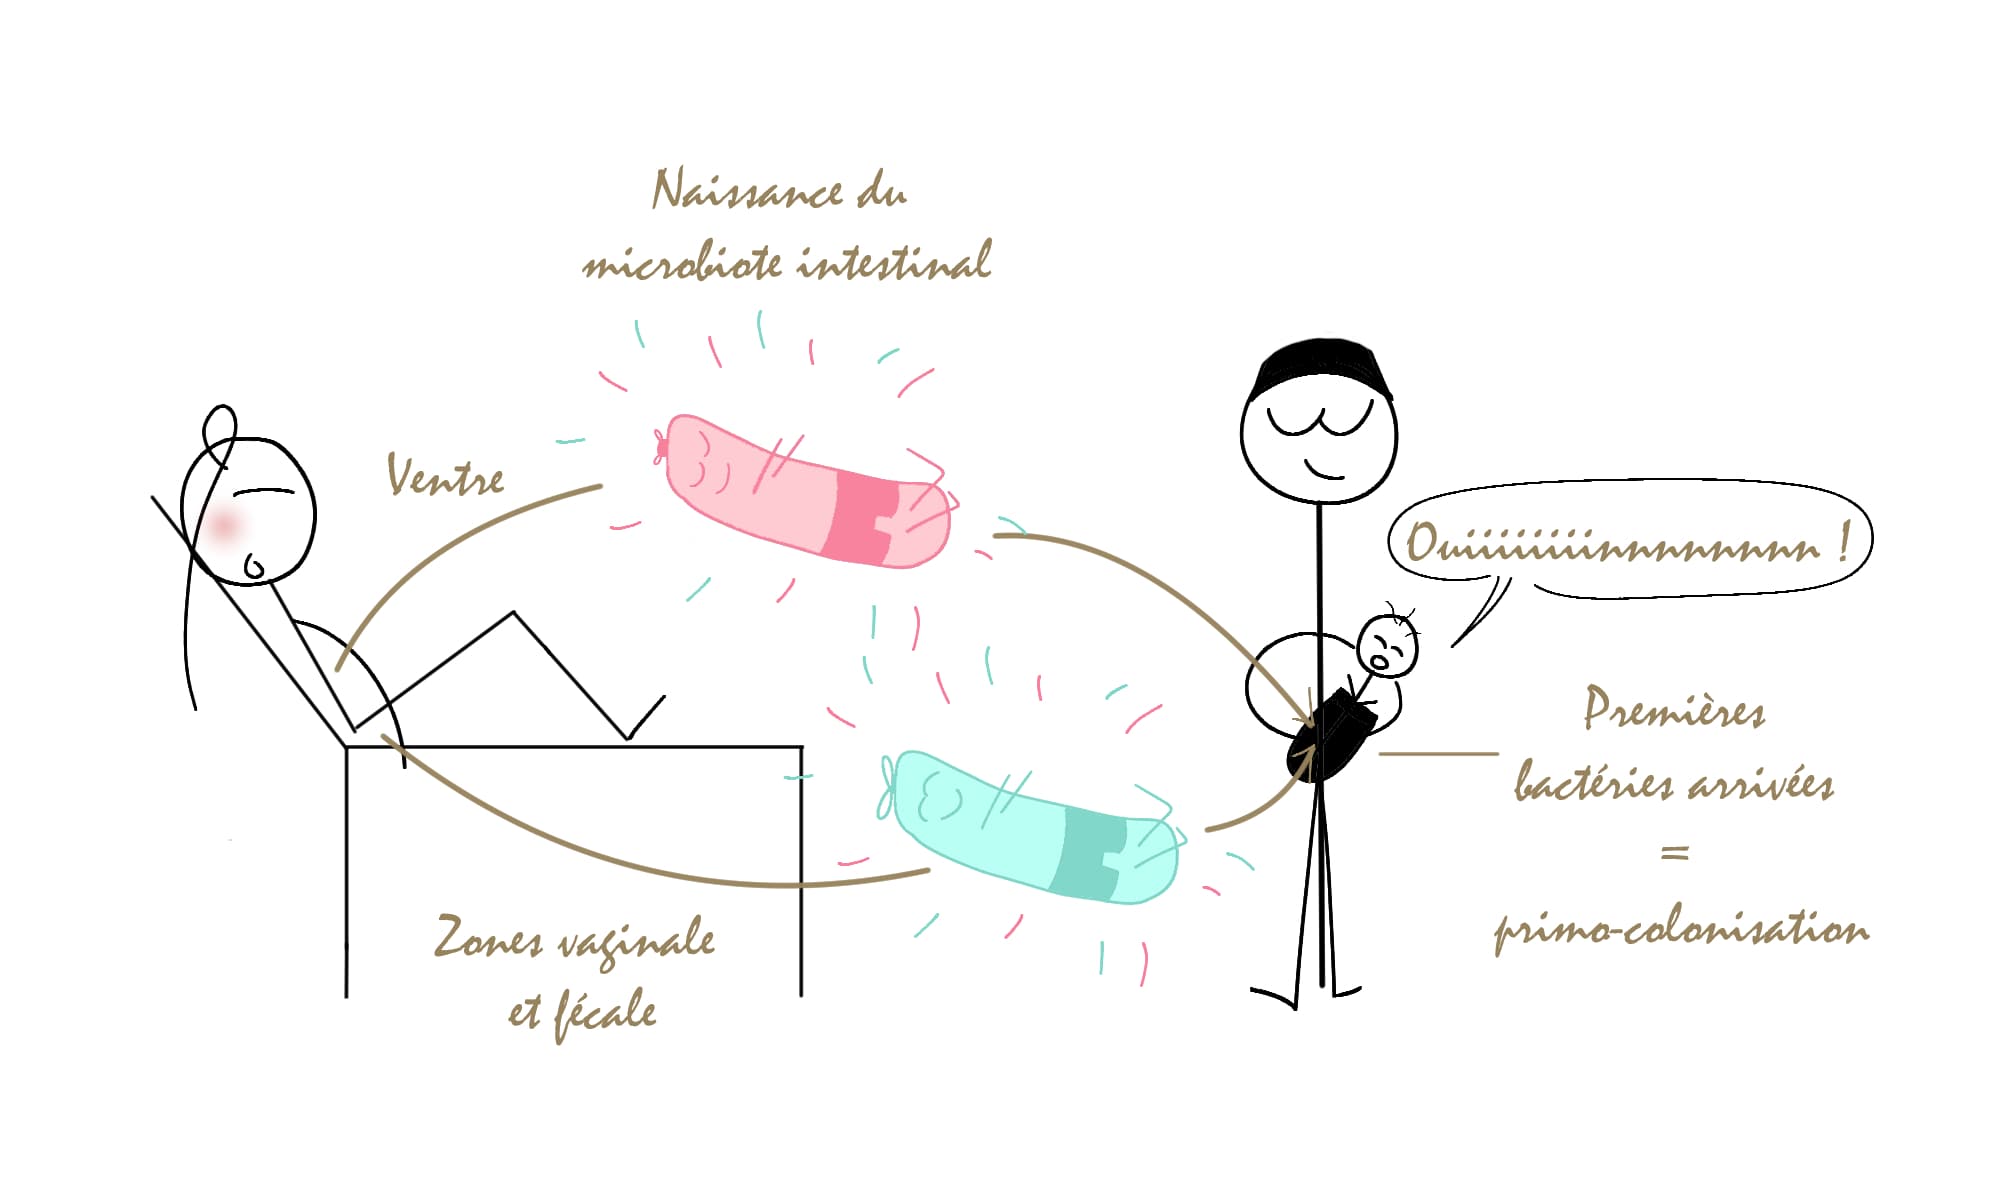 Le mode d'accouchement impact la composition initiale du microbiote intestinal